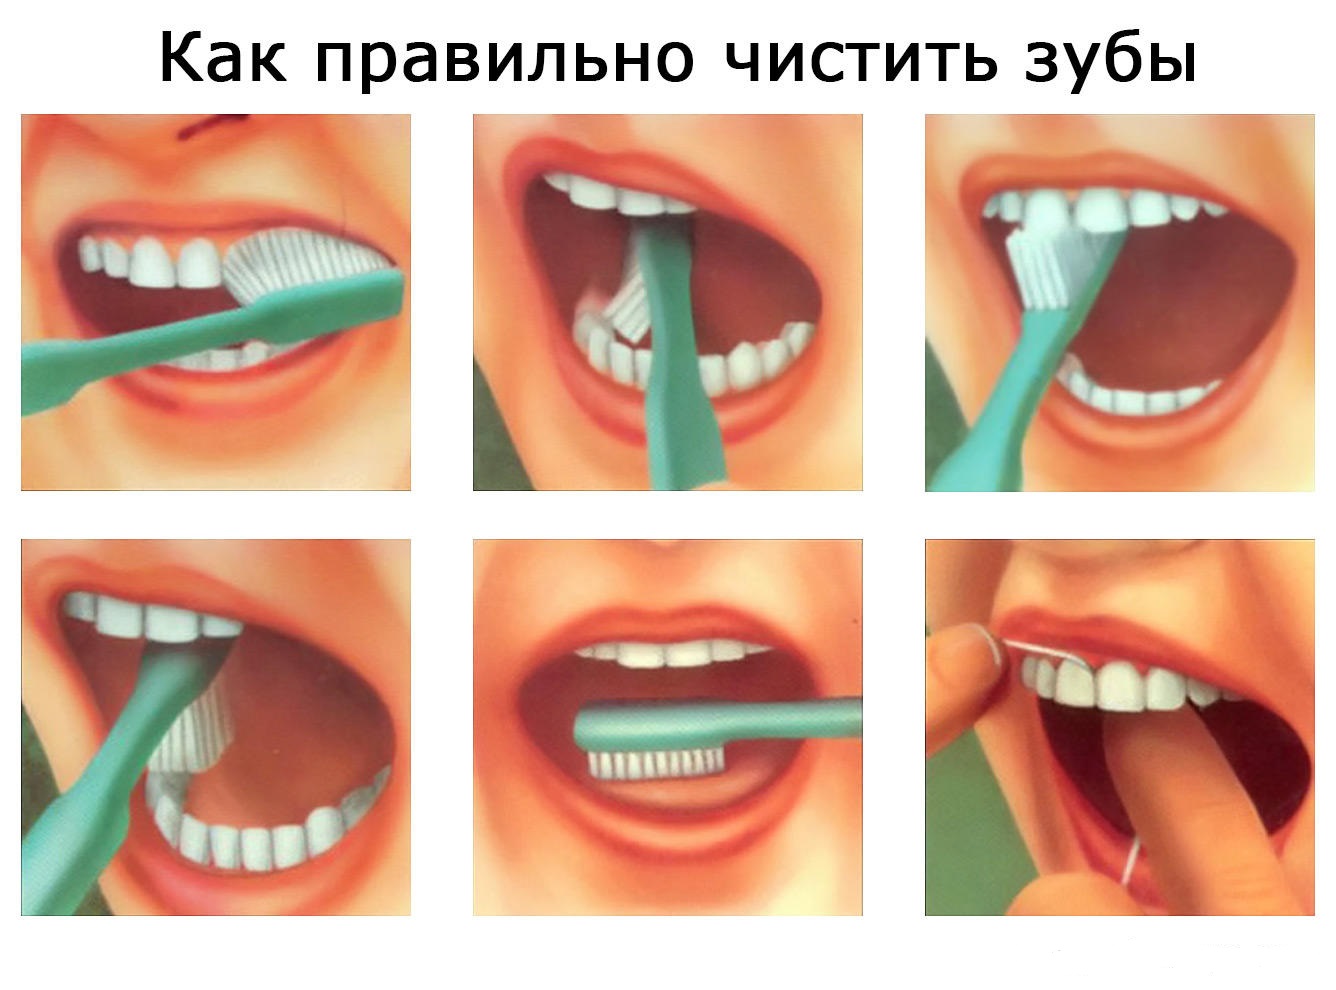 Чем отличается чистка зубов. Как правильно чистить зубы. КСК праивльно чистить щубы. Как правильно Чисть зубы. Правильная чистка зубов.